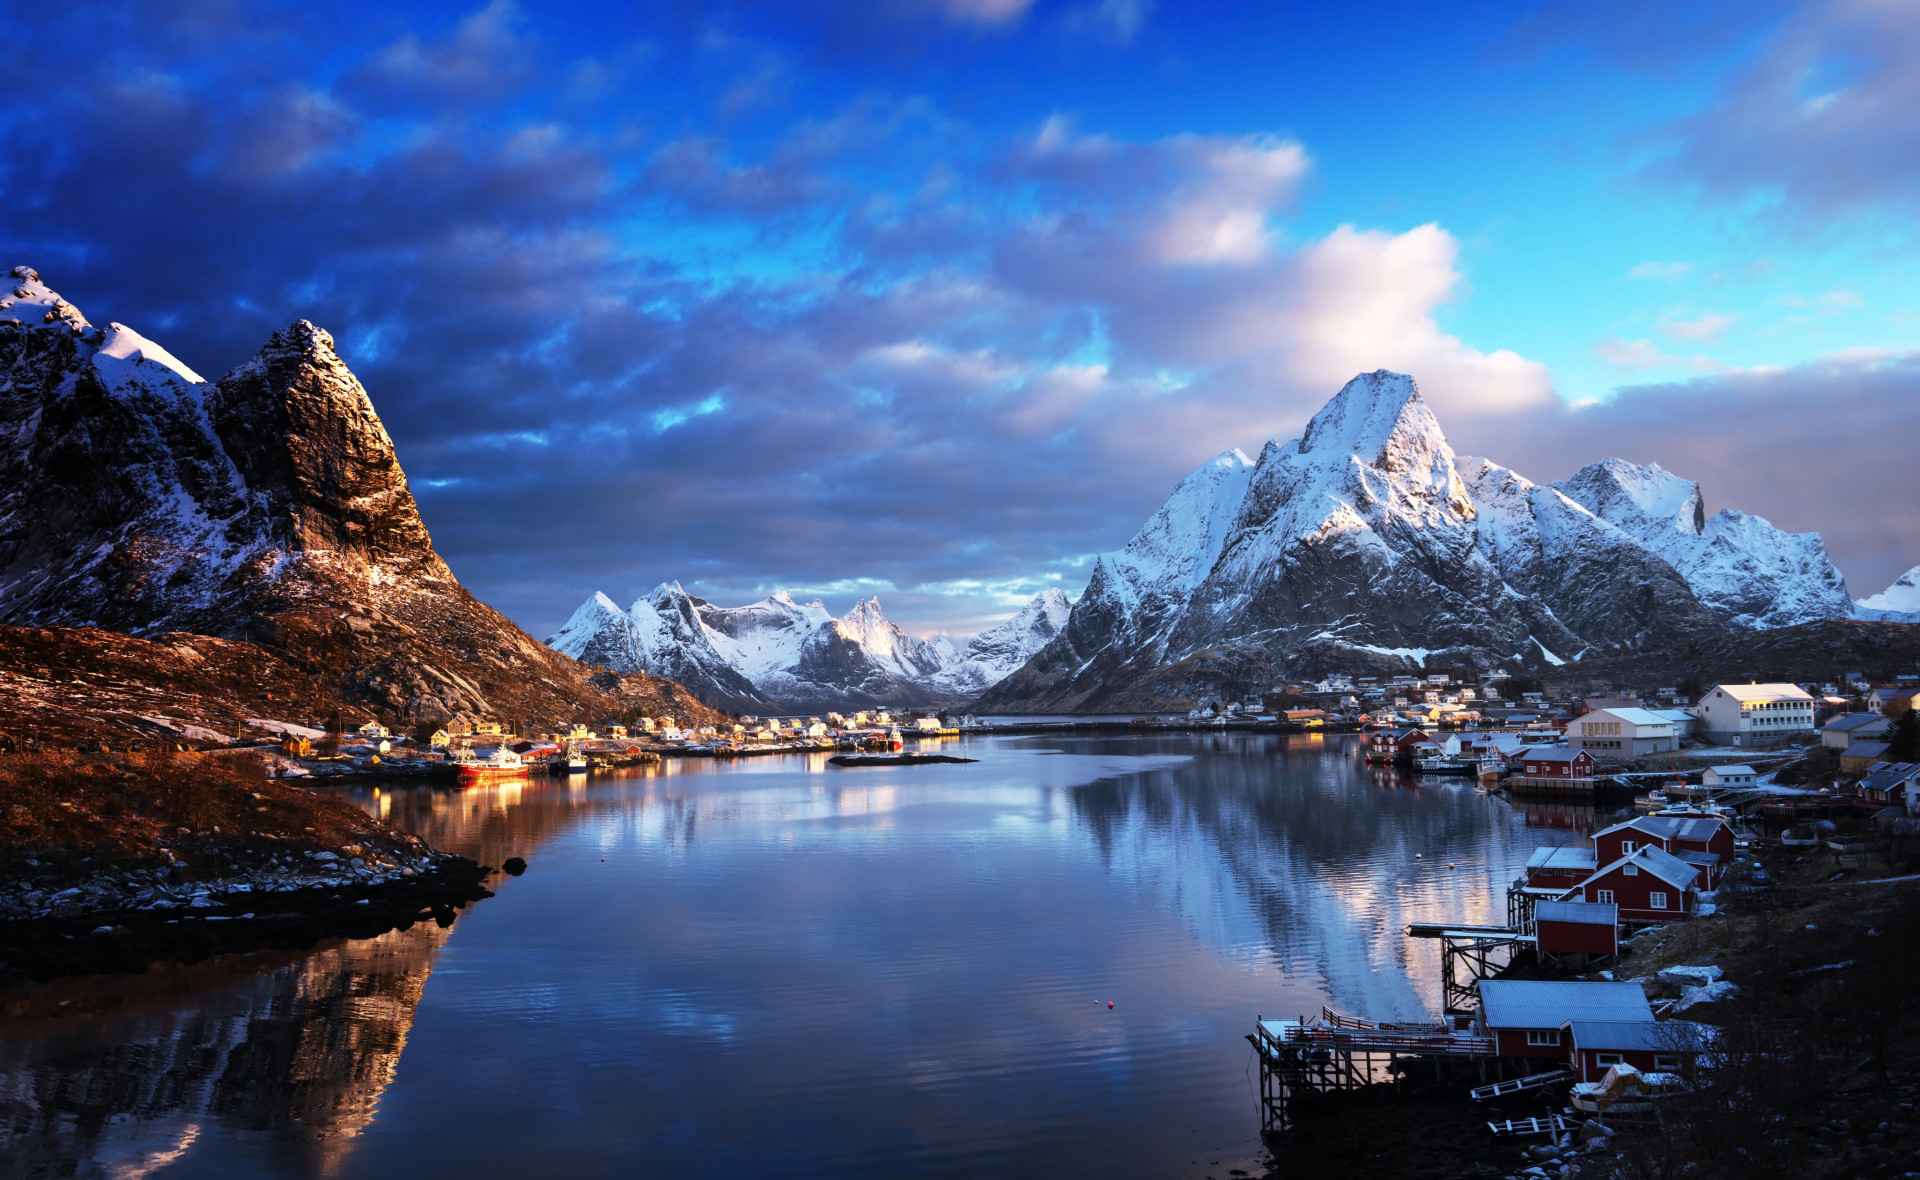 Situé dans le comté de Nordland, l'archipel de Lofoten dispose de vastes montagnes, d'incroyables fjords et de paysage magiques.<p><a href="https://www.msn.com/fr-fr/community/channel/vid-7xx8mnucu55yw63we9va2gwr7uihbxwc68fxqp25x6tg4ftibpra?cvid=94631541bc0f4f89bfd59158d696ad7e">Suivez-nous et accédez tous les jours à du contenu exclusif</a></p>